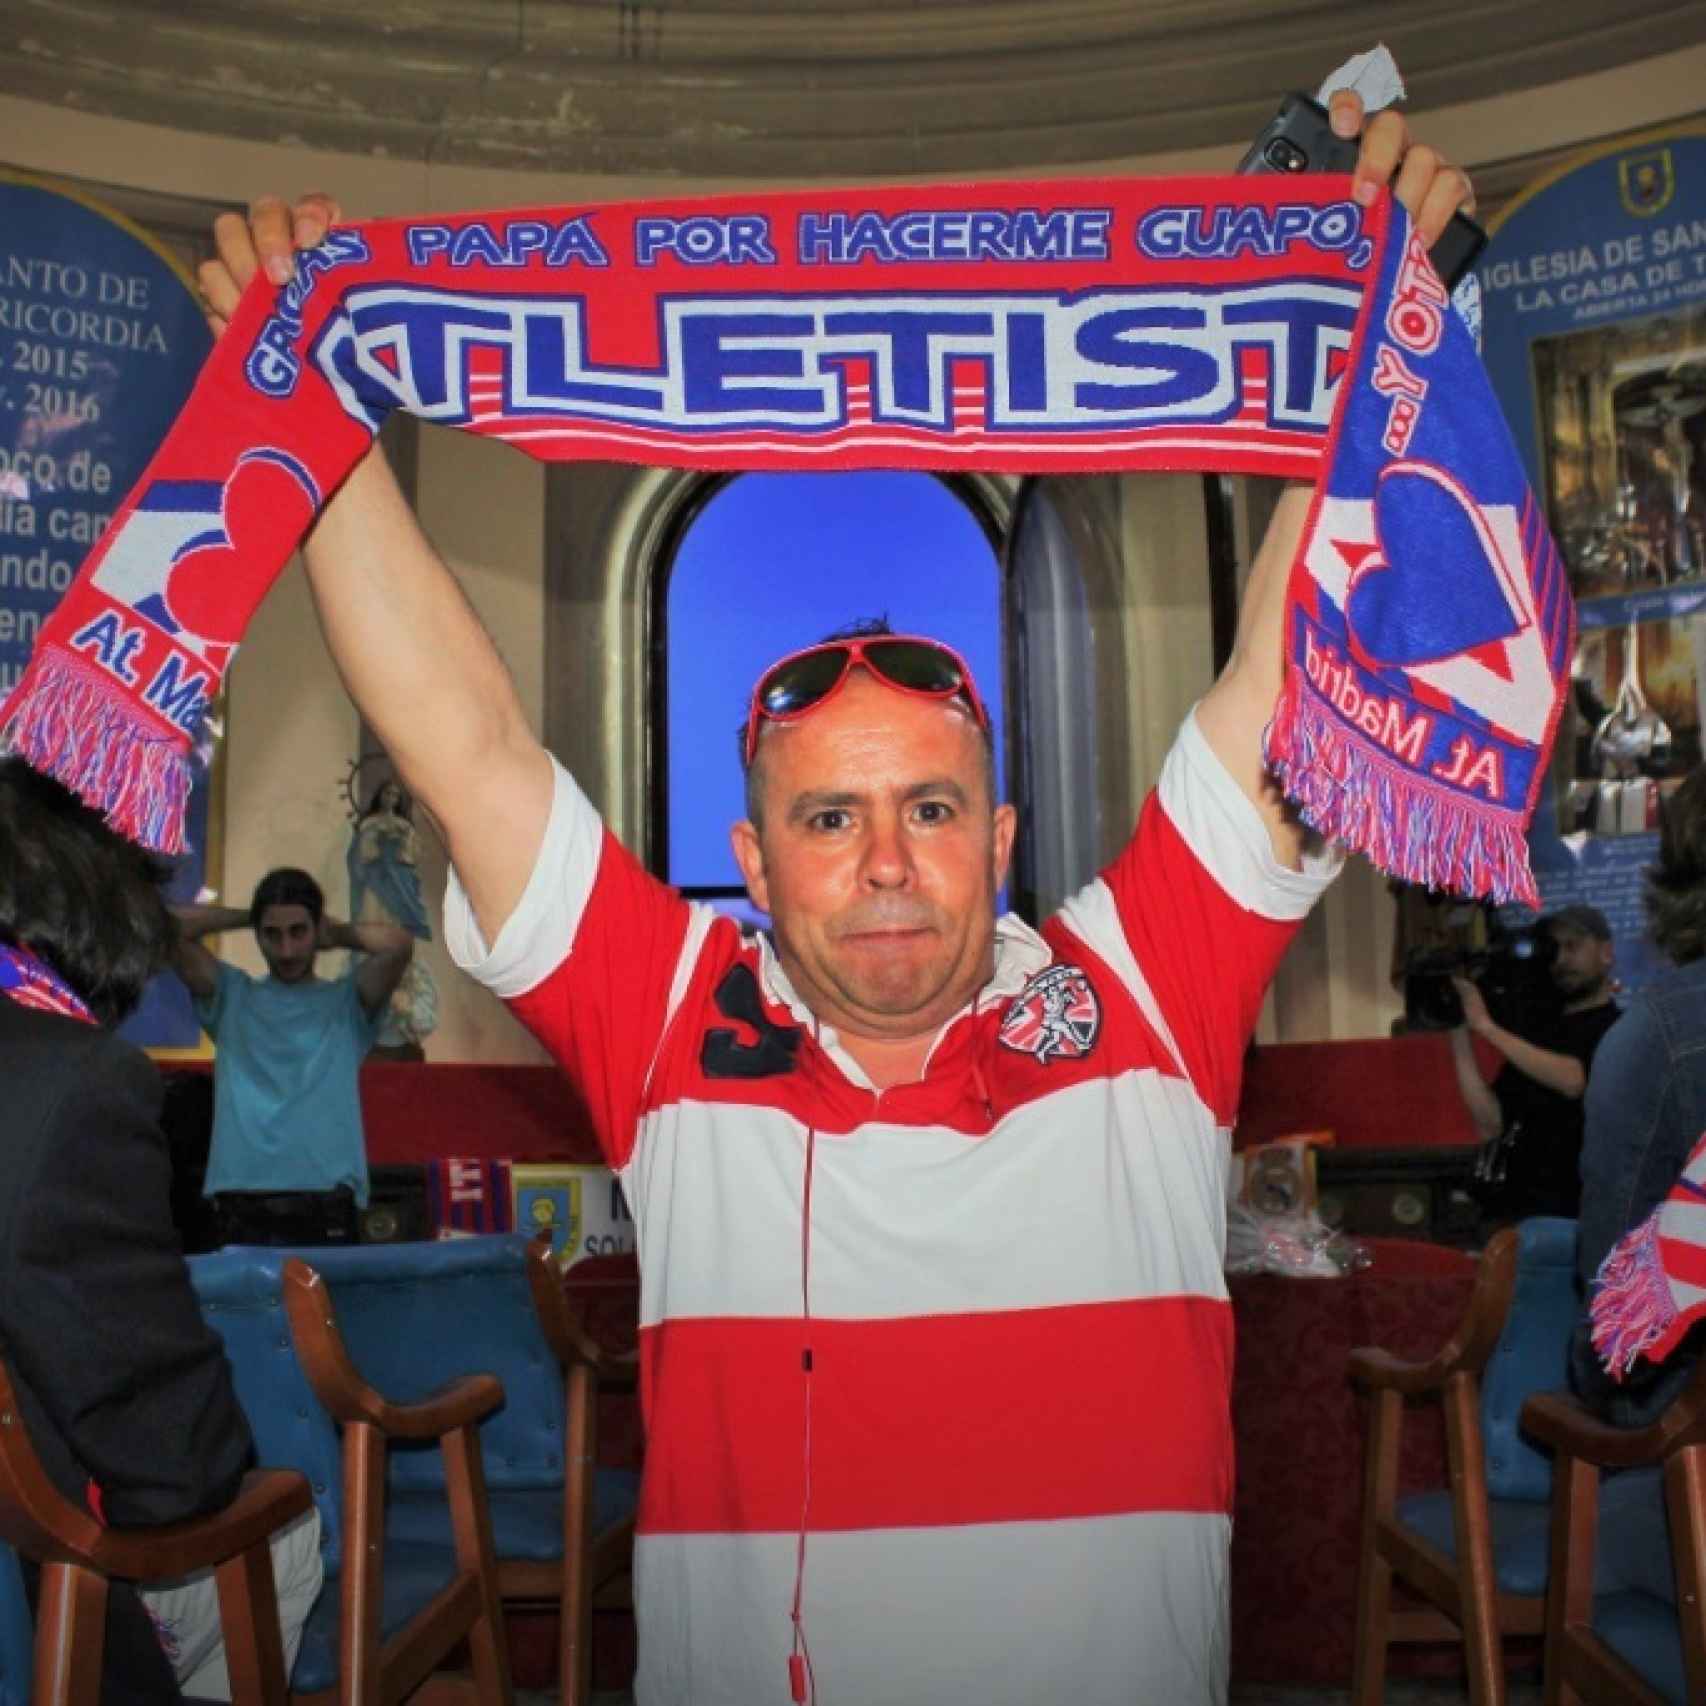 Un aficionado del Atlético de Madrid en la sala de la iglesia en la que se vio el partido.